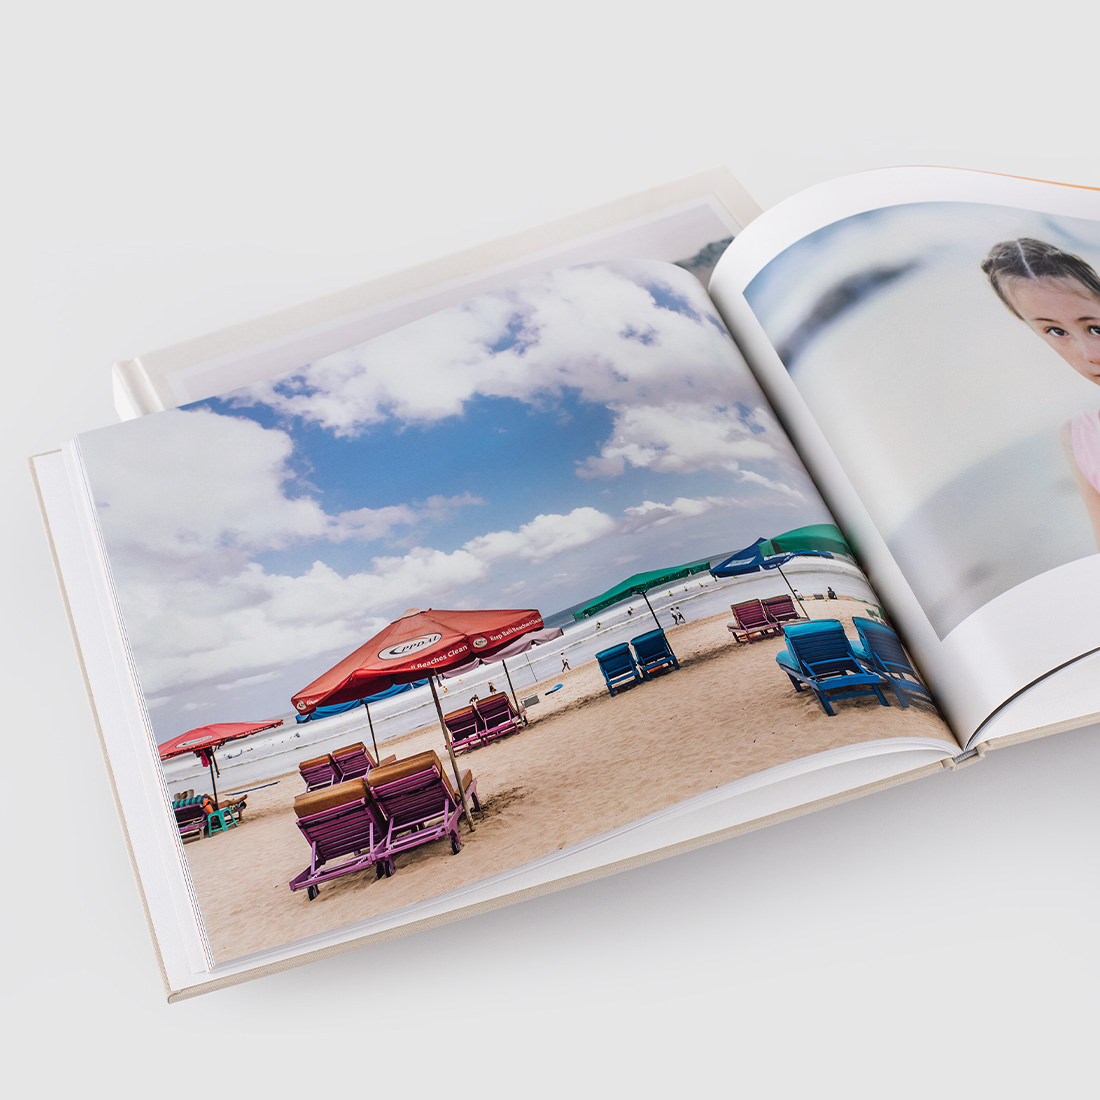 Aprire il Fotolibro classico che mostra l'immagine della spiaggia.